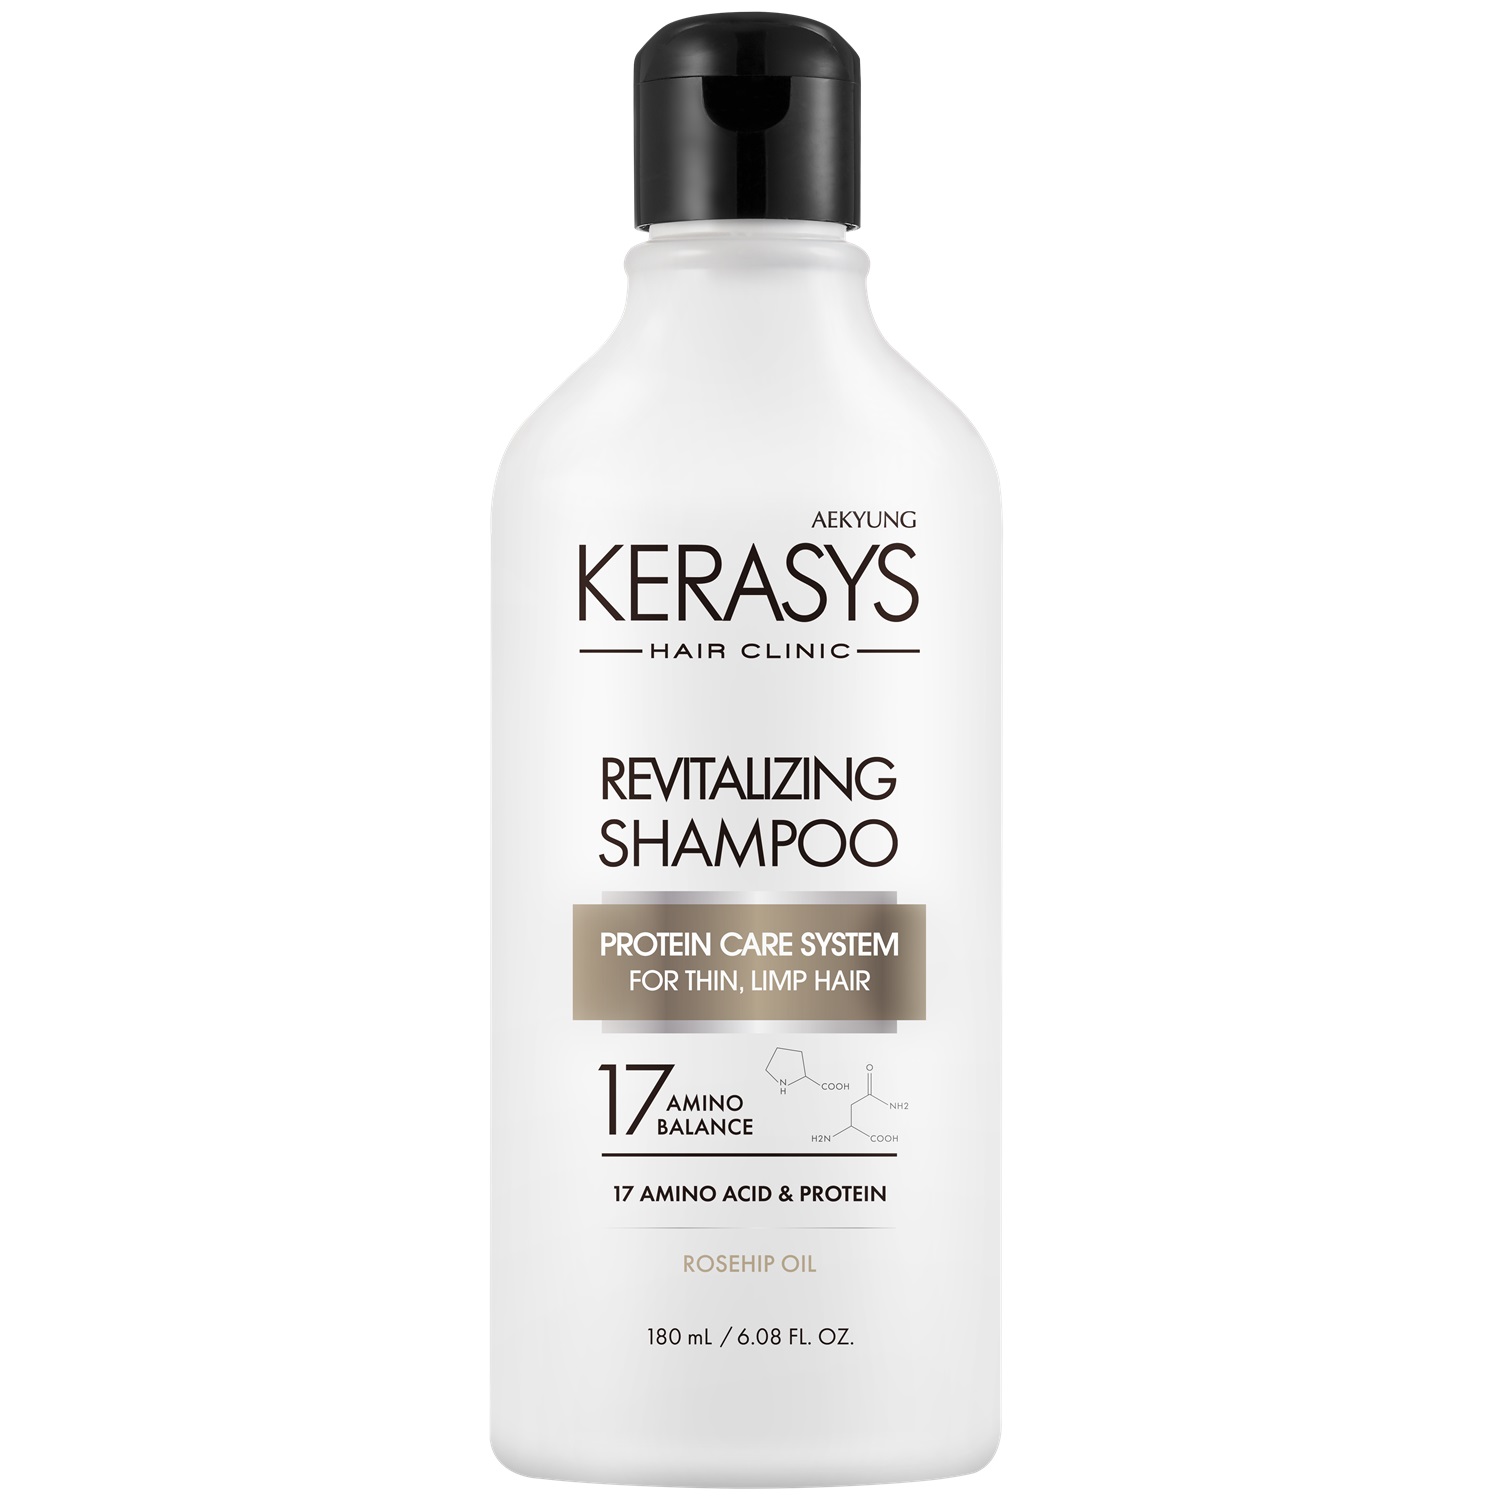 Kerasys Шампунь оздоравливающий для волос, 180 мл (Kerasys, Hair Clinic) kerasys шампунь для волос оздоравливающий 180 мл 3 шт